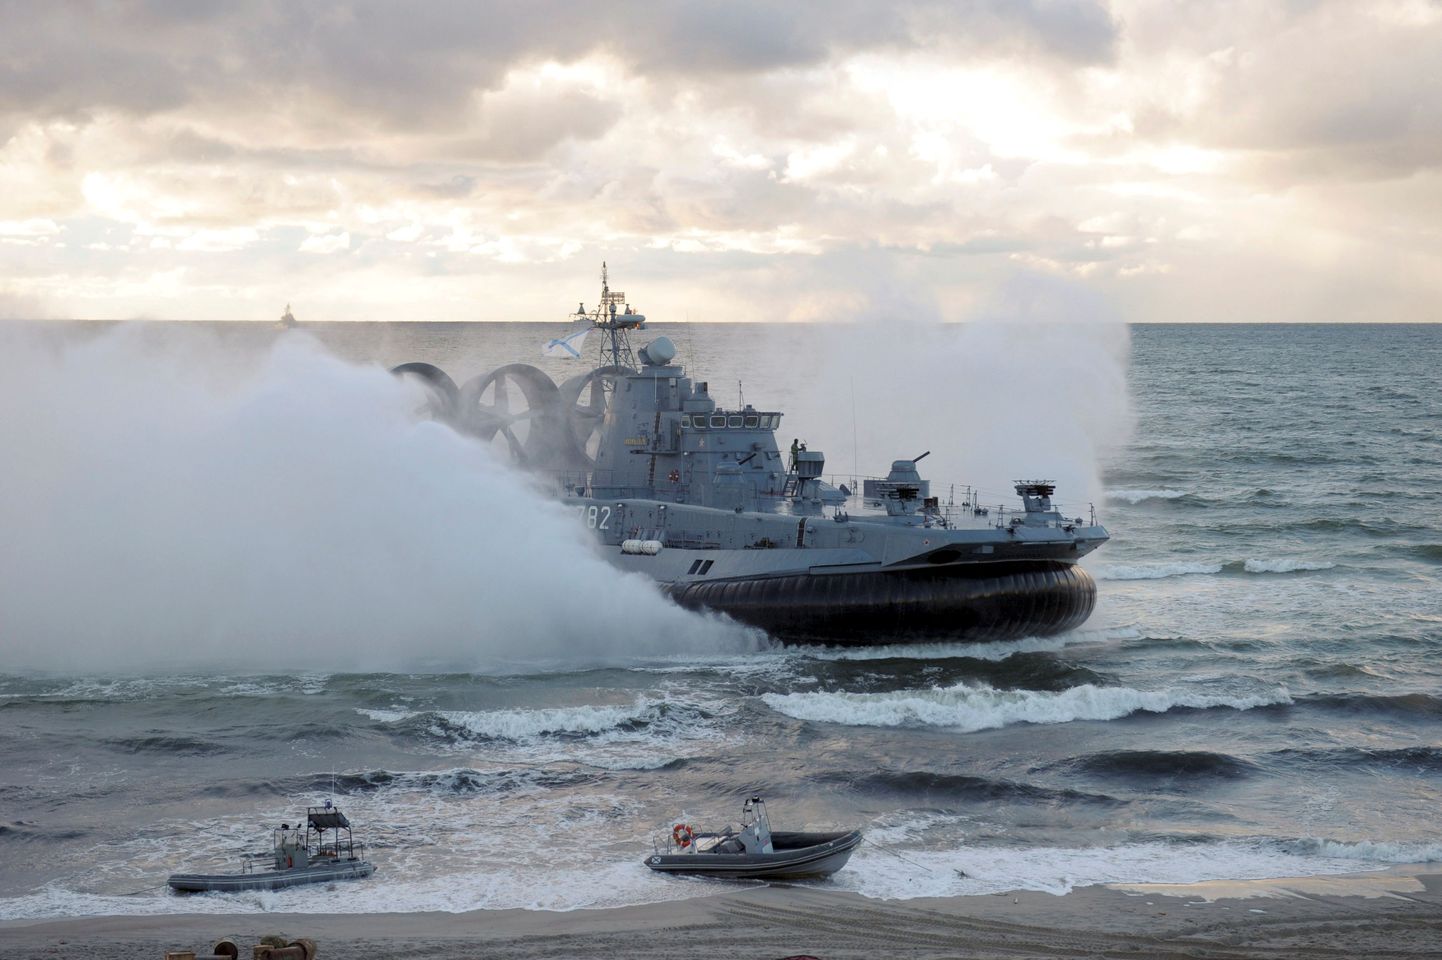 Vene sõjalaev Kalinigradi juures Läänemerel 2013. aastal Vene-Valgevene ühisõppuste ajal.